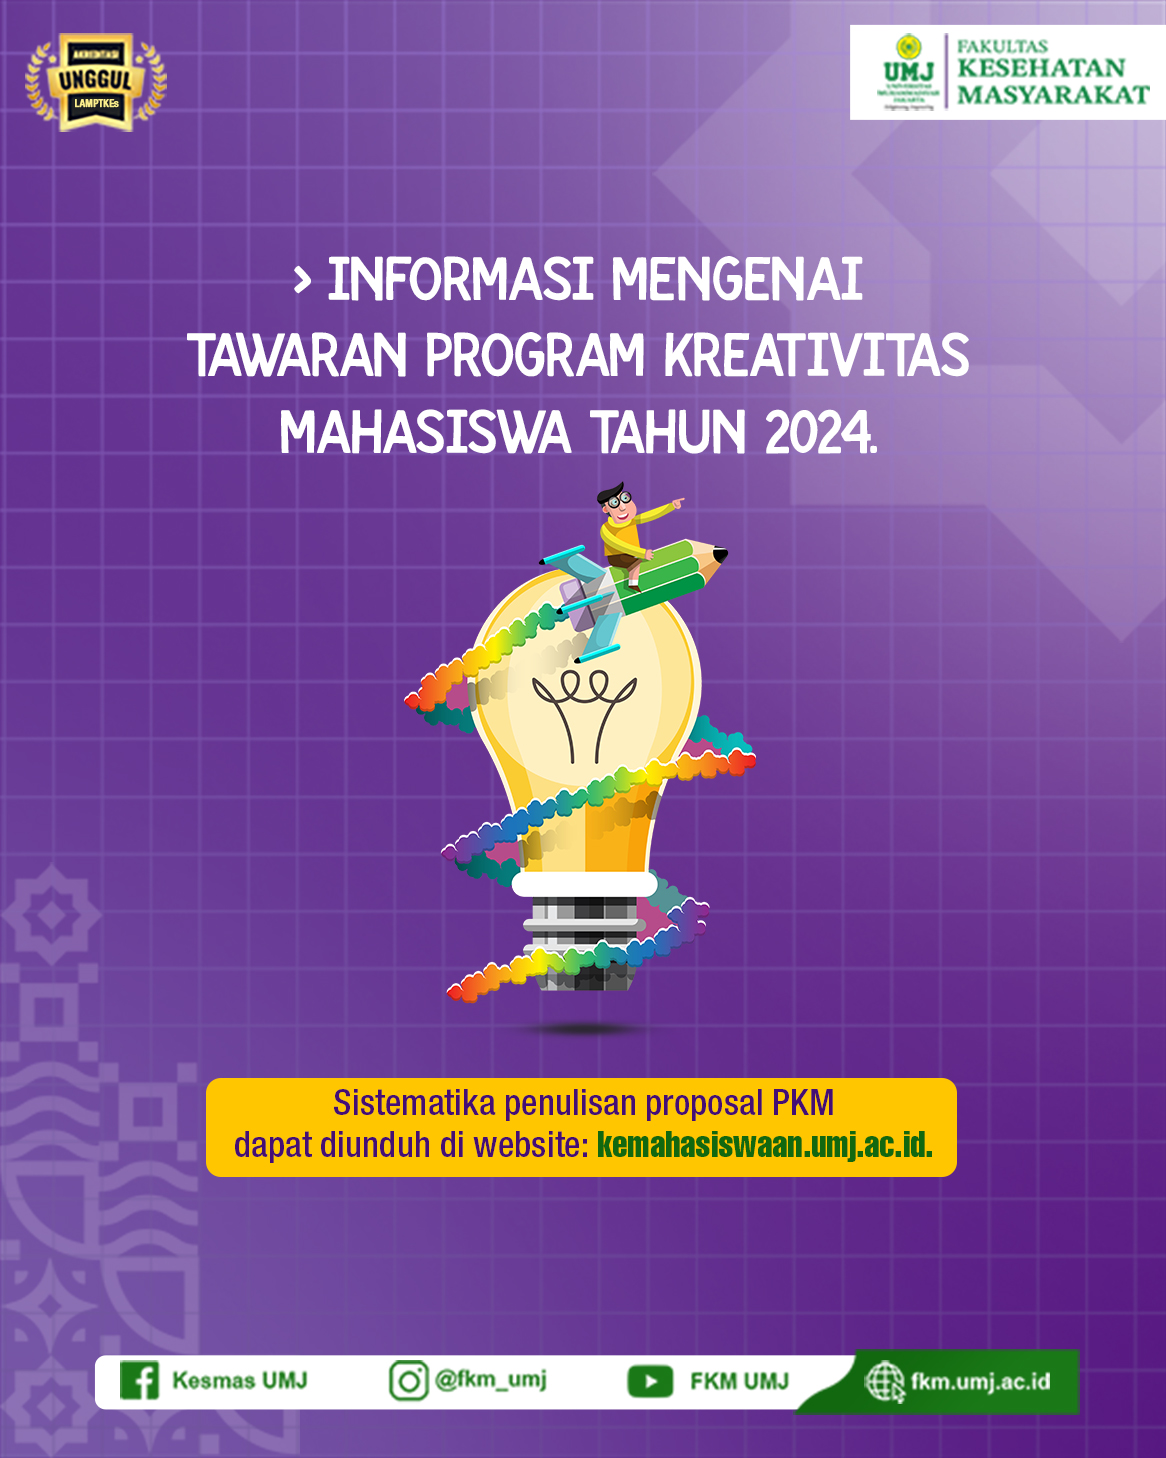 Pengumuman : Informasi Mengenai Tawaran Program Kreativitas Mahasiswa Tahun 2024.